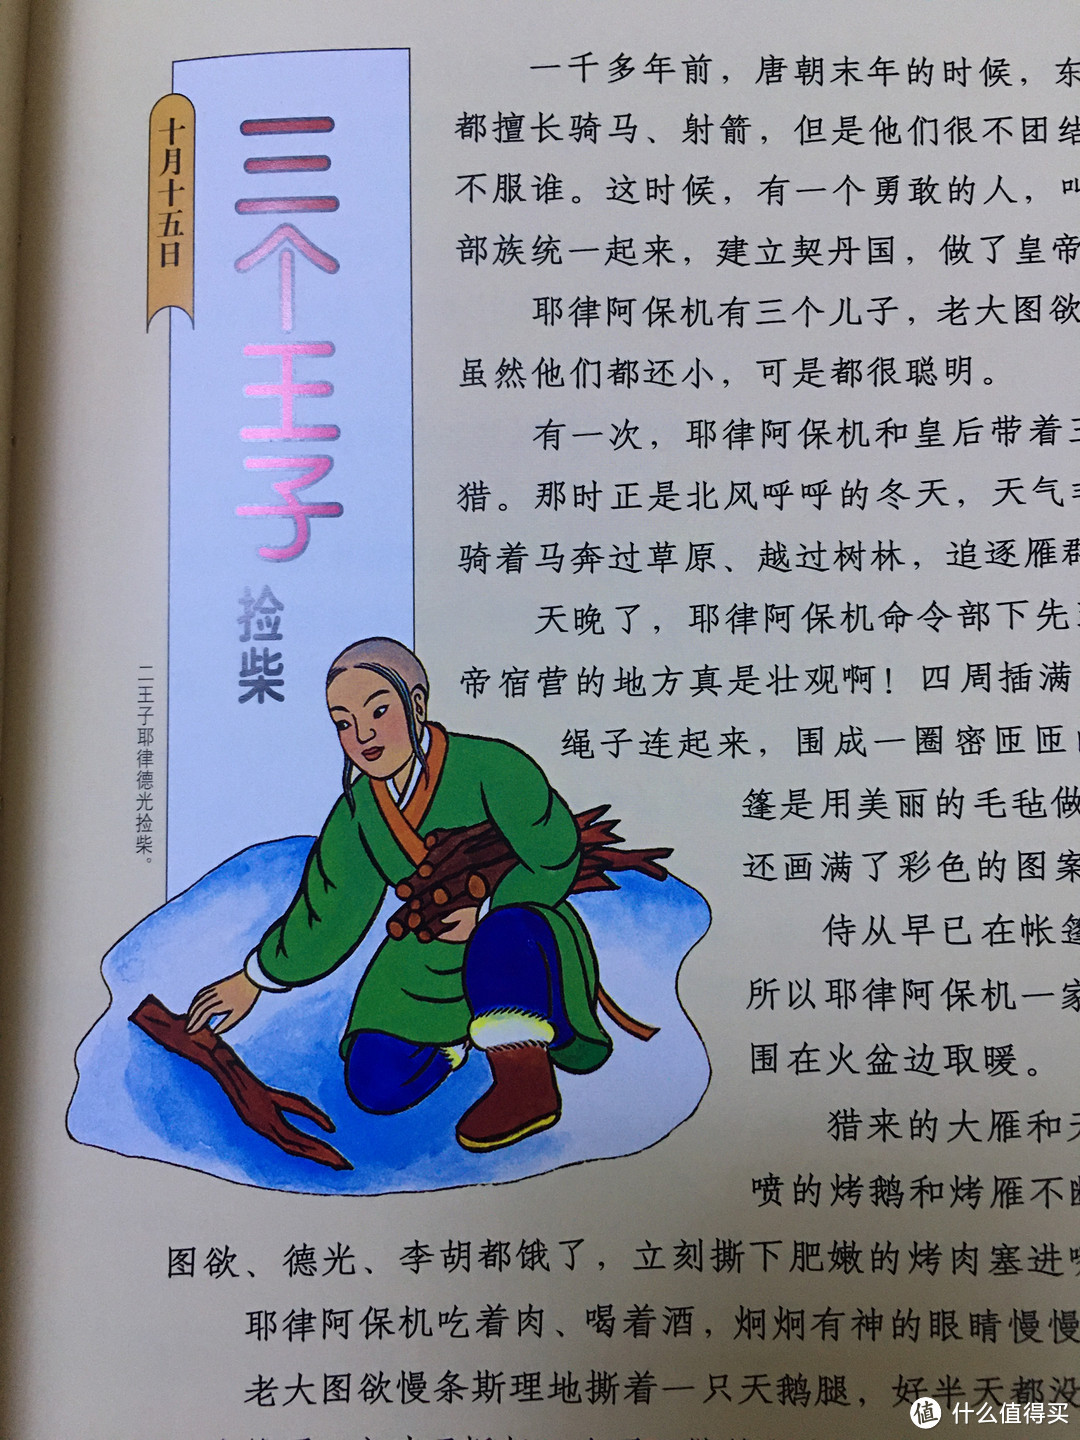 文化自信要从娃娃抓起——品读《中国童话》